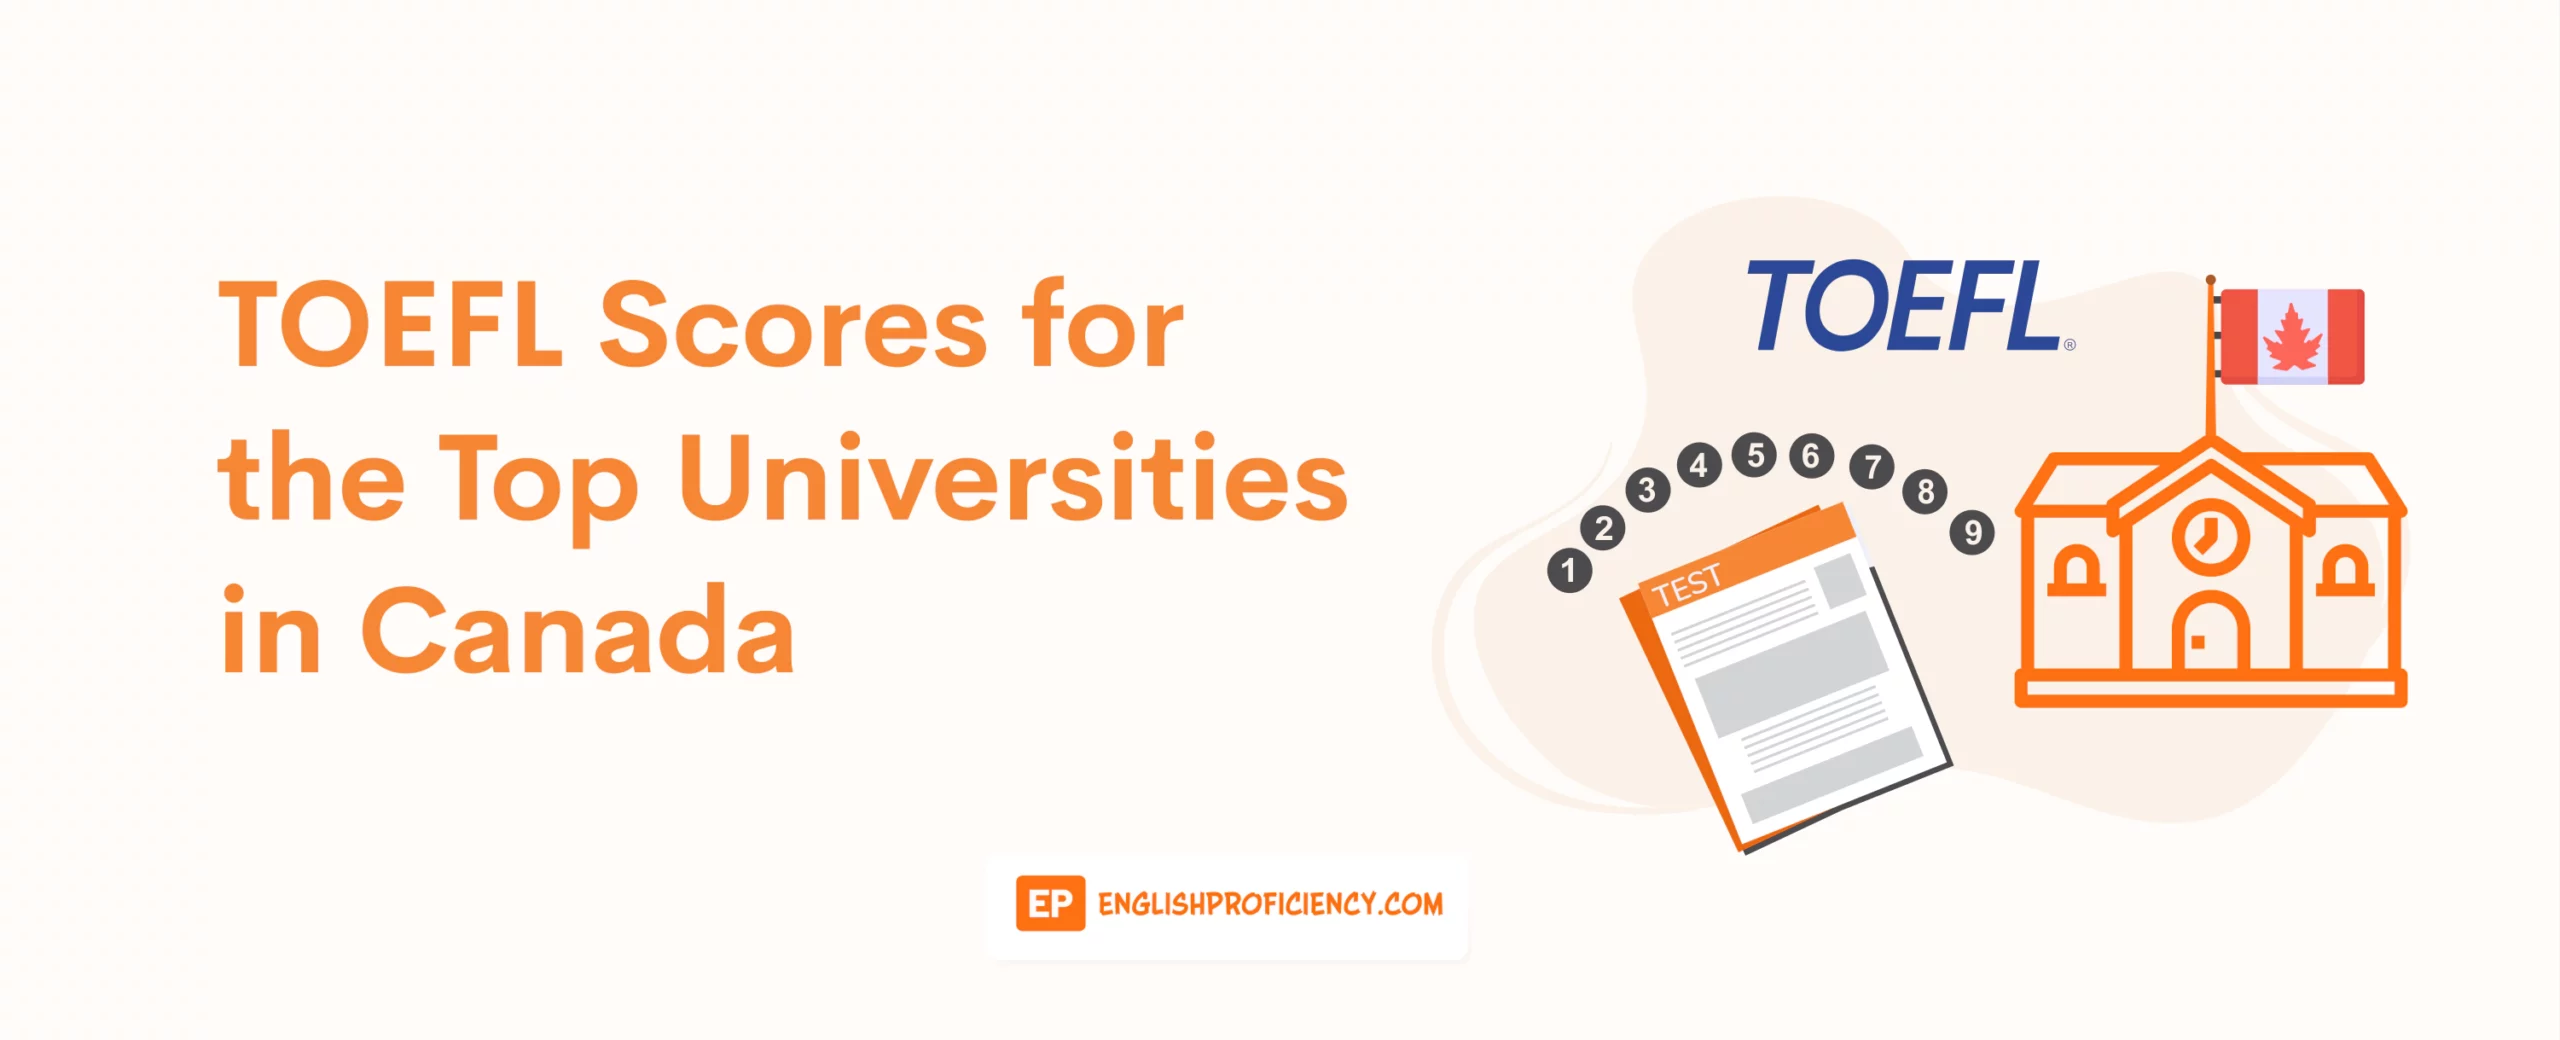 TOEFL Scores for the Top Universities in Canada